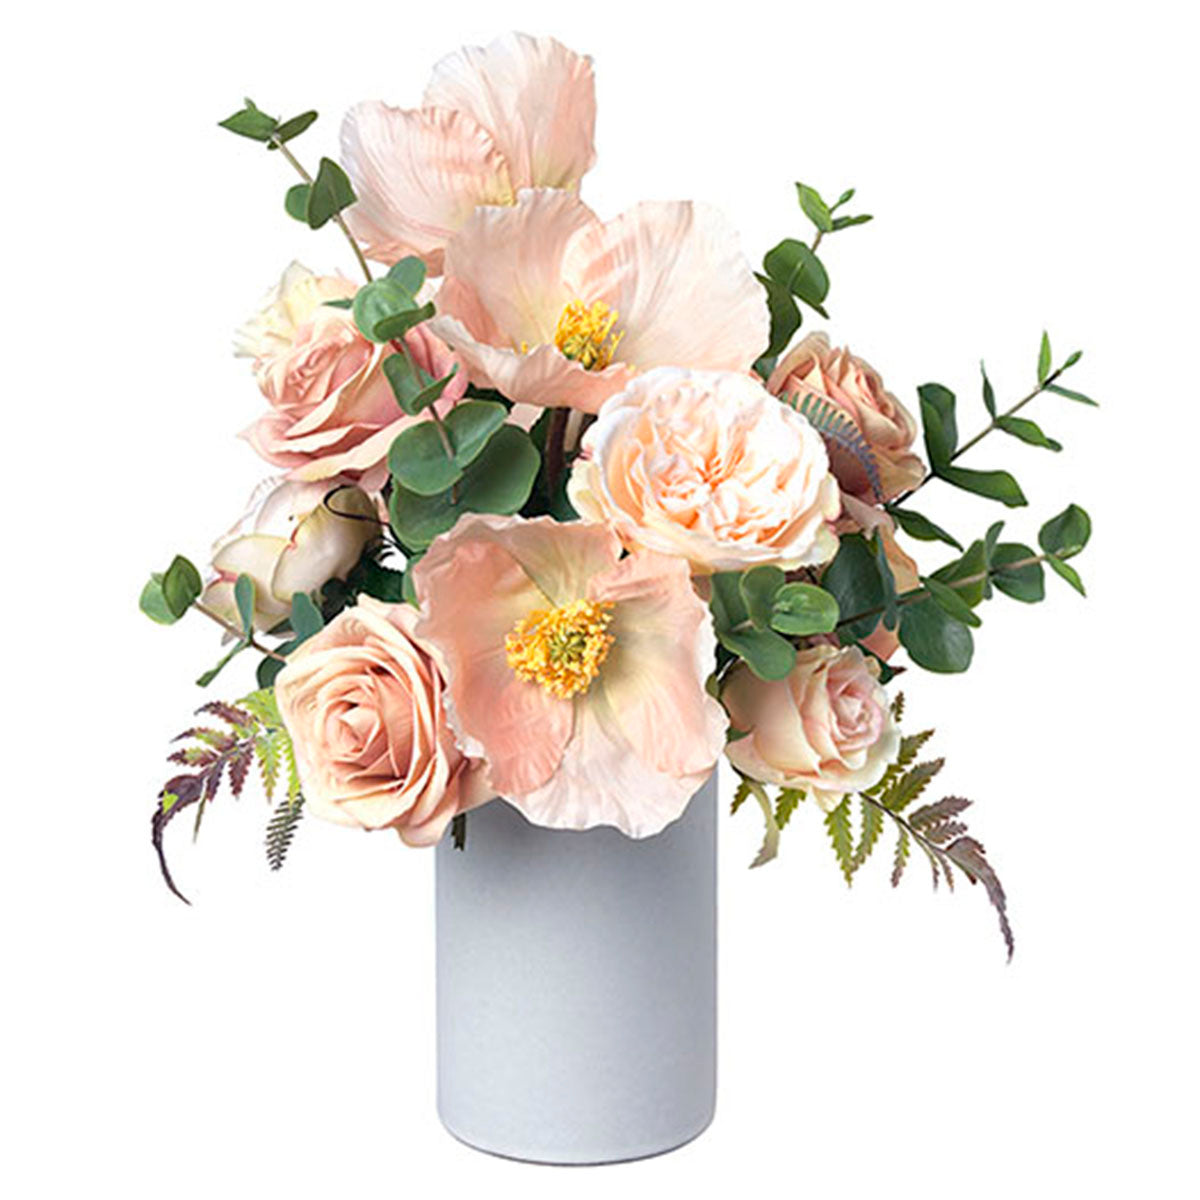 Diane James Poppy, Rose & Fern Bouquet in Vase